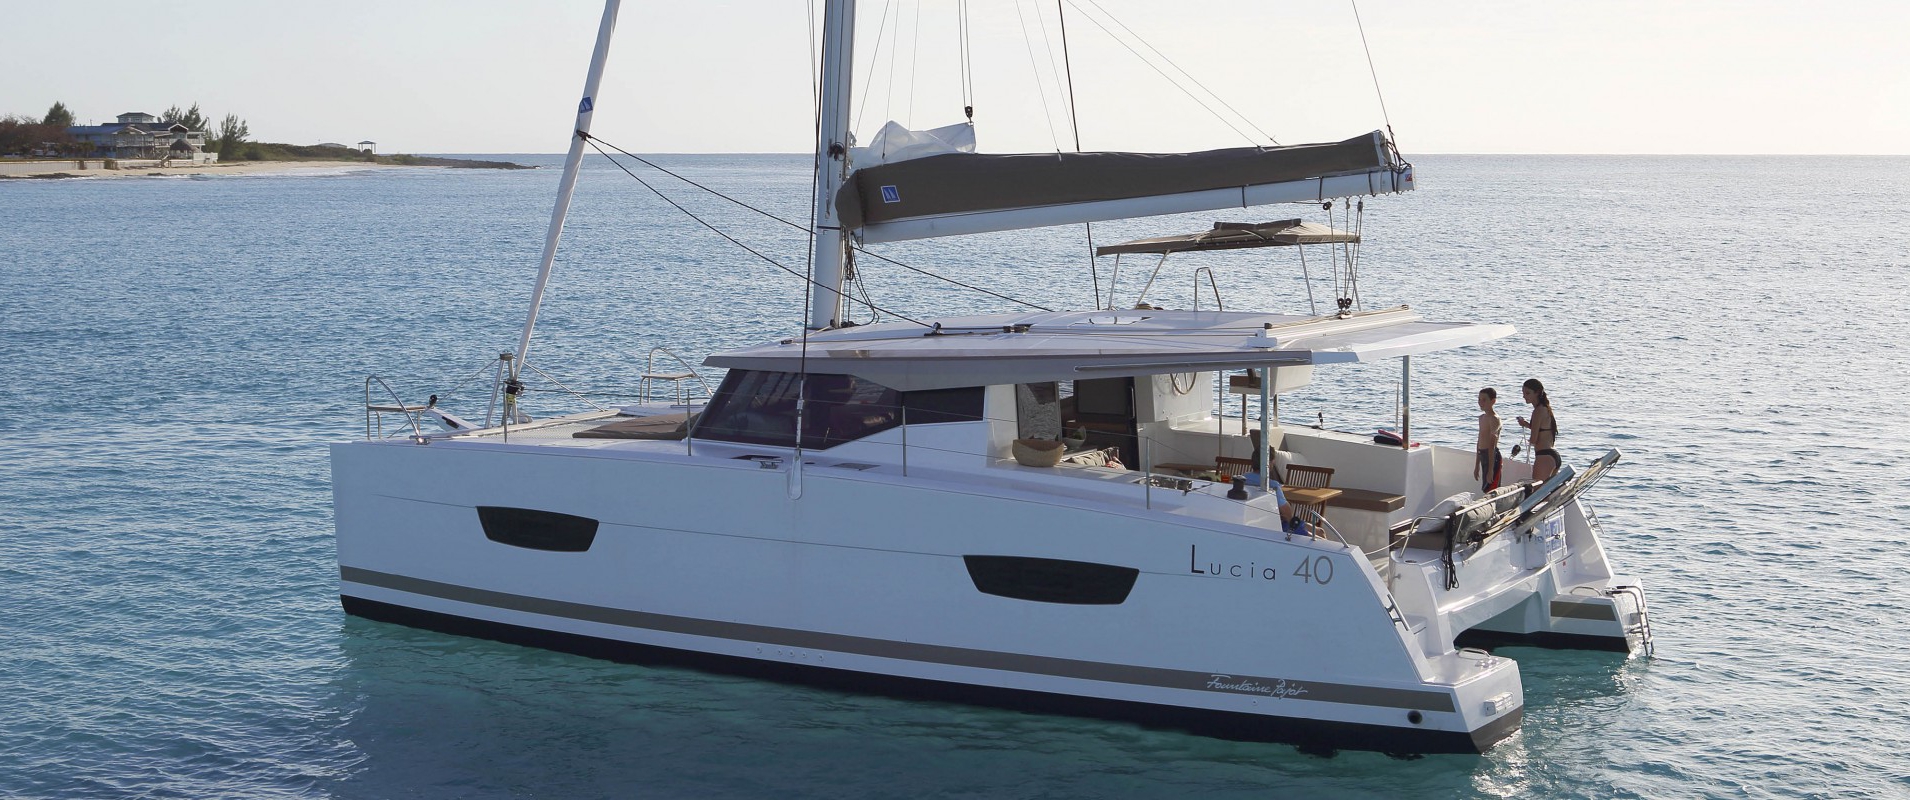 Fountaine Pajot Lucia 40 - Yacht Charter Mykonos & Boat hire in Greece Cyclades Islands Mykonos Mykonos 1